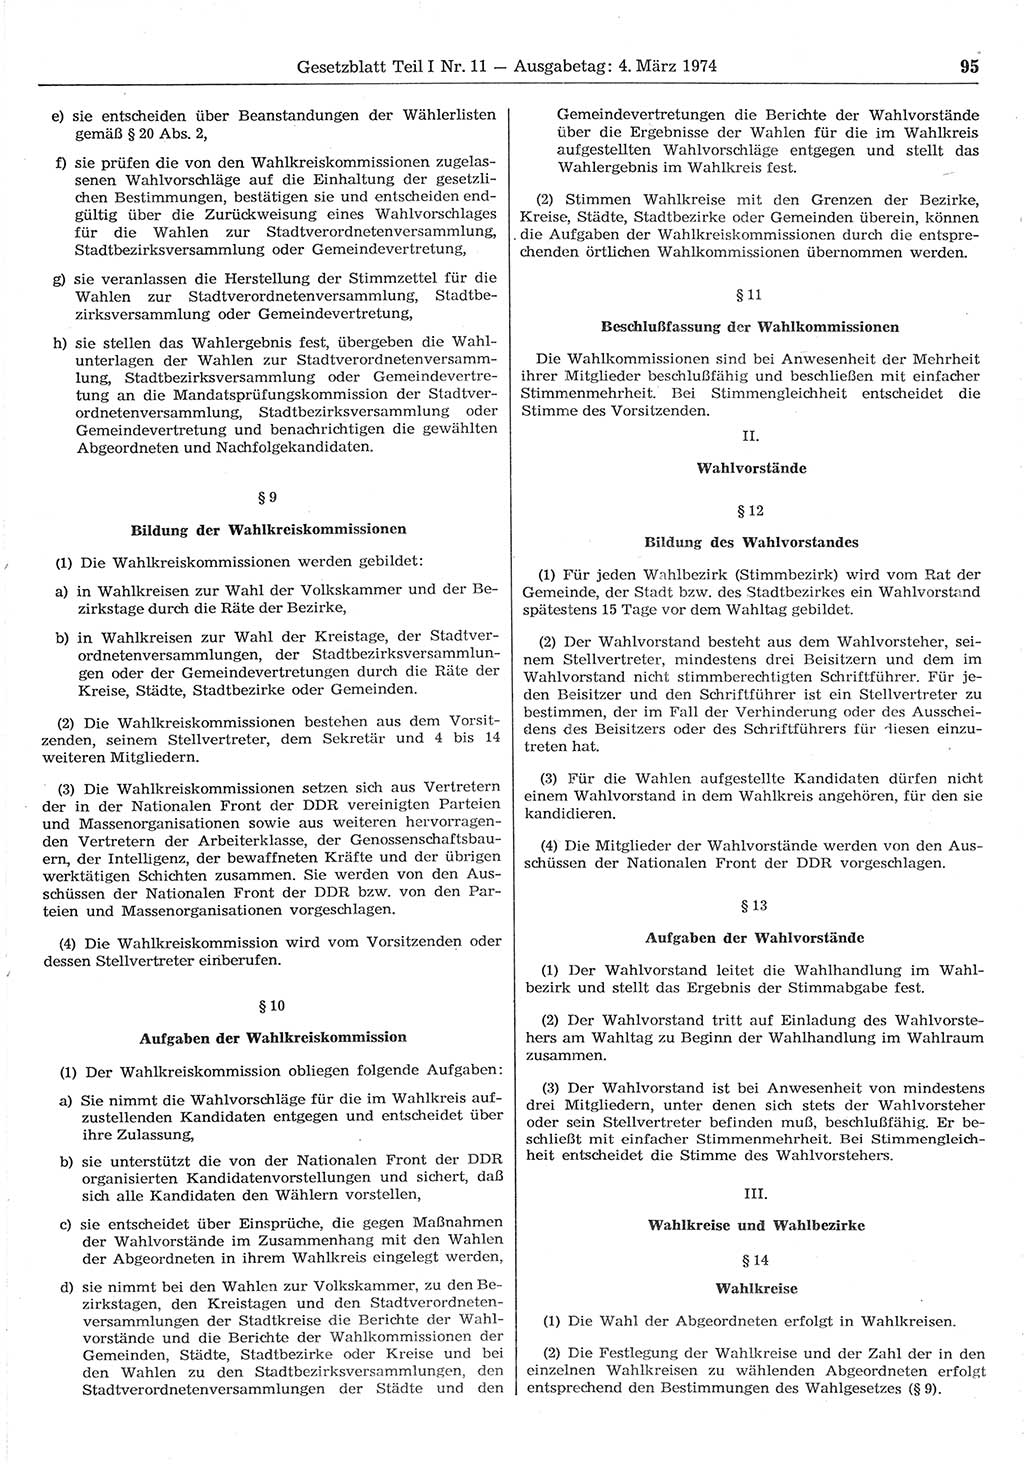 Gesetzblatt (GBl.) der Deutschen Demokratischen Republik (DDR) Teil Ⅰ 1974, Seite 95 (GBl. DDR Ⅰ 1974, S. 95)